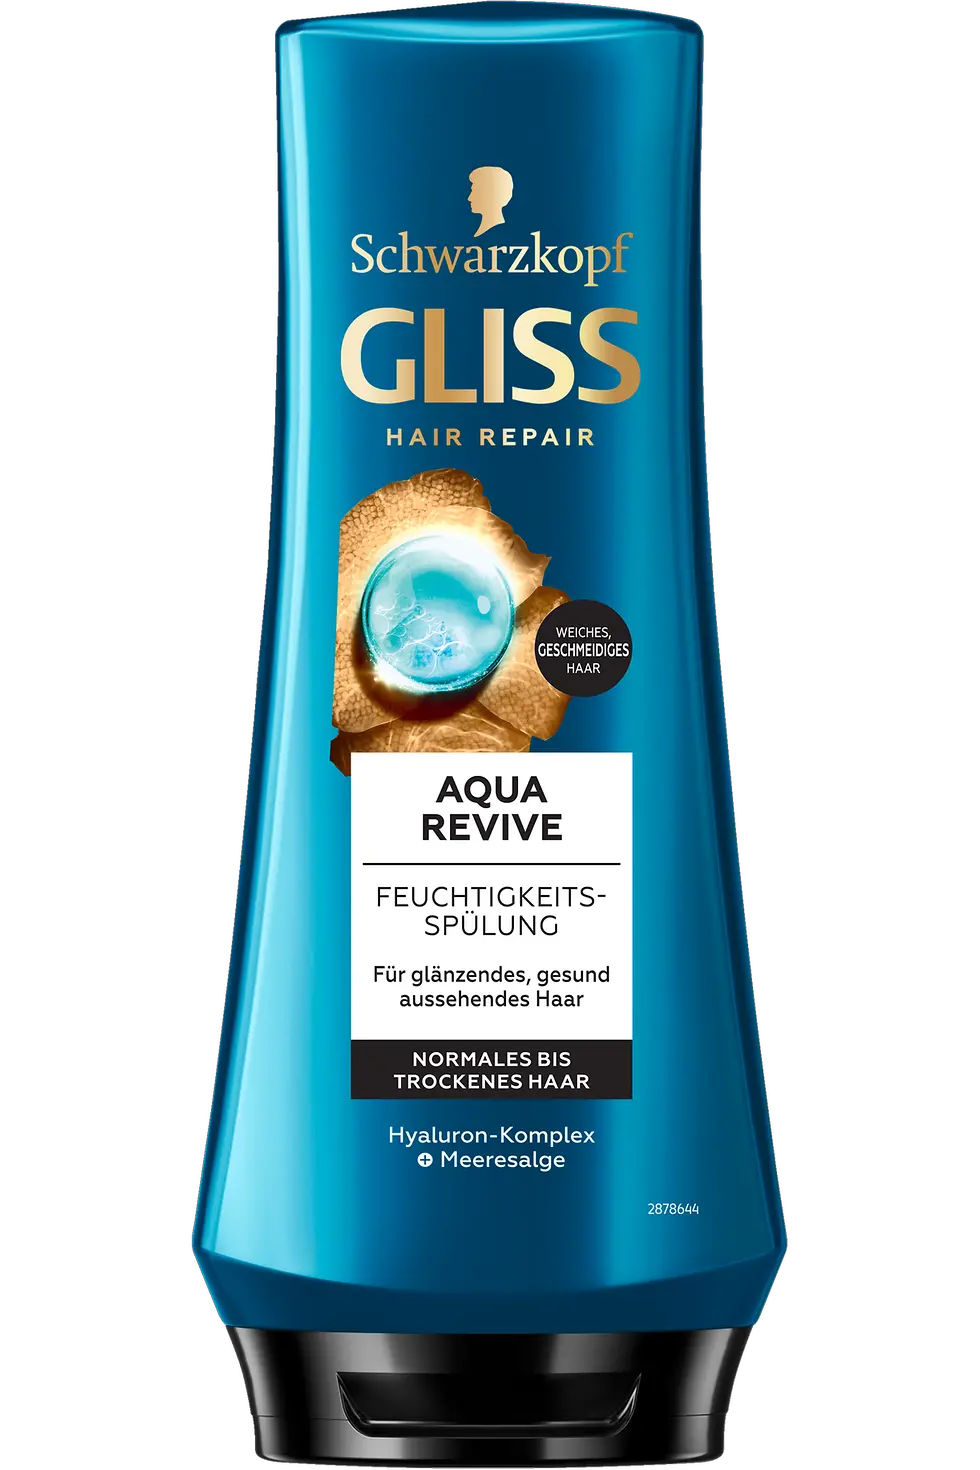 
Gliss Spülung Aqua Revive